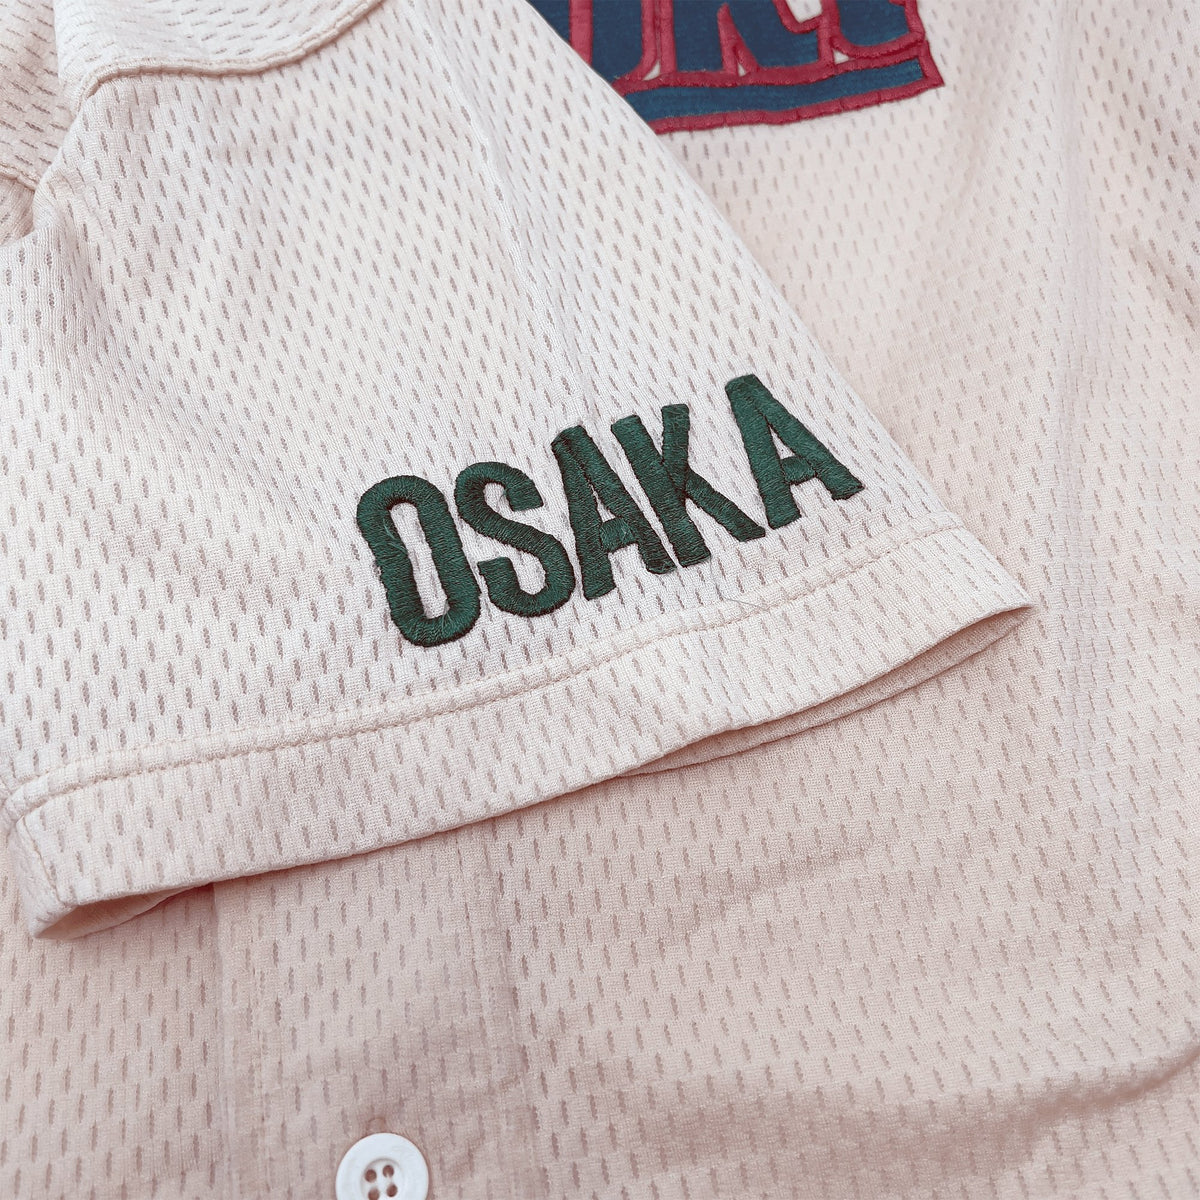 Retro Japan Koshien Tsukinoki Osaka Kansai High School Rawlings Baseball Jersey - Sugoi JDM